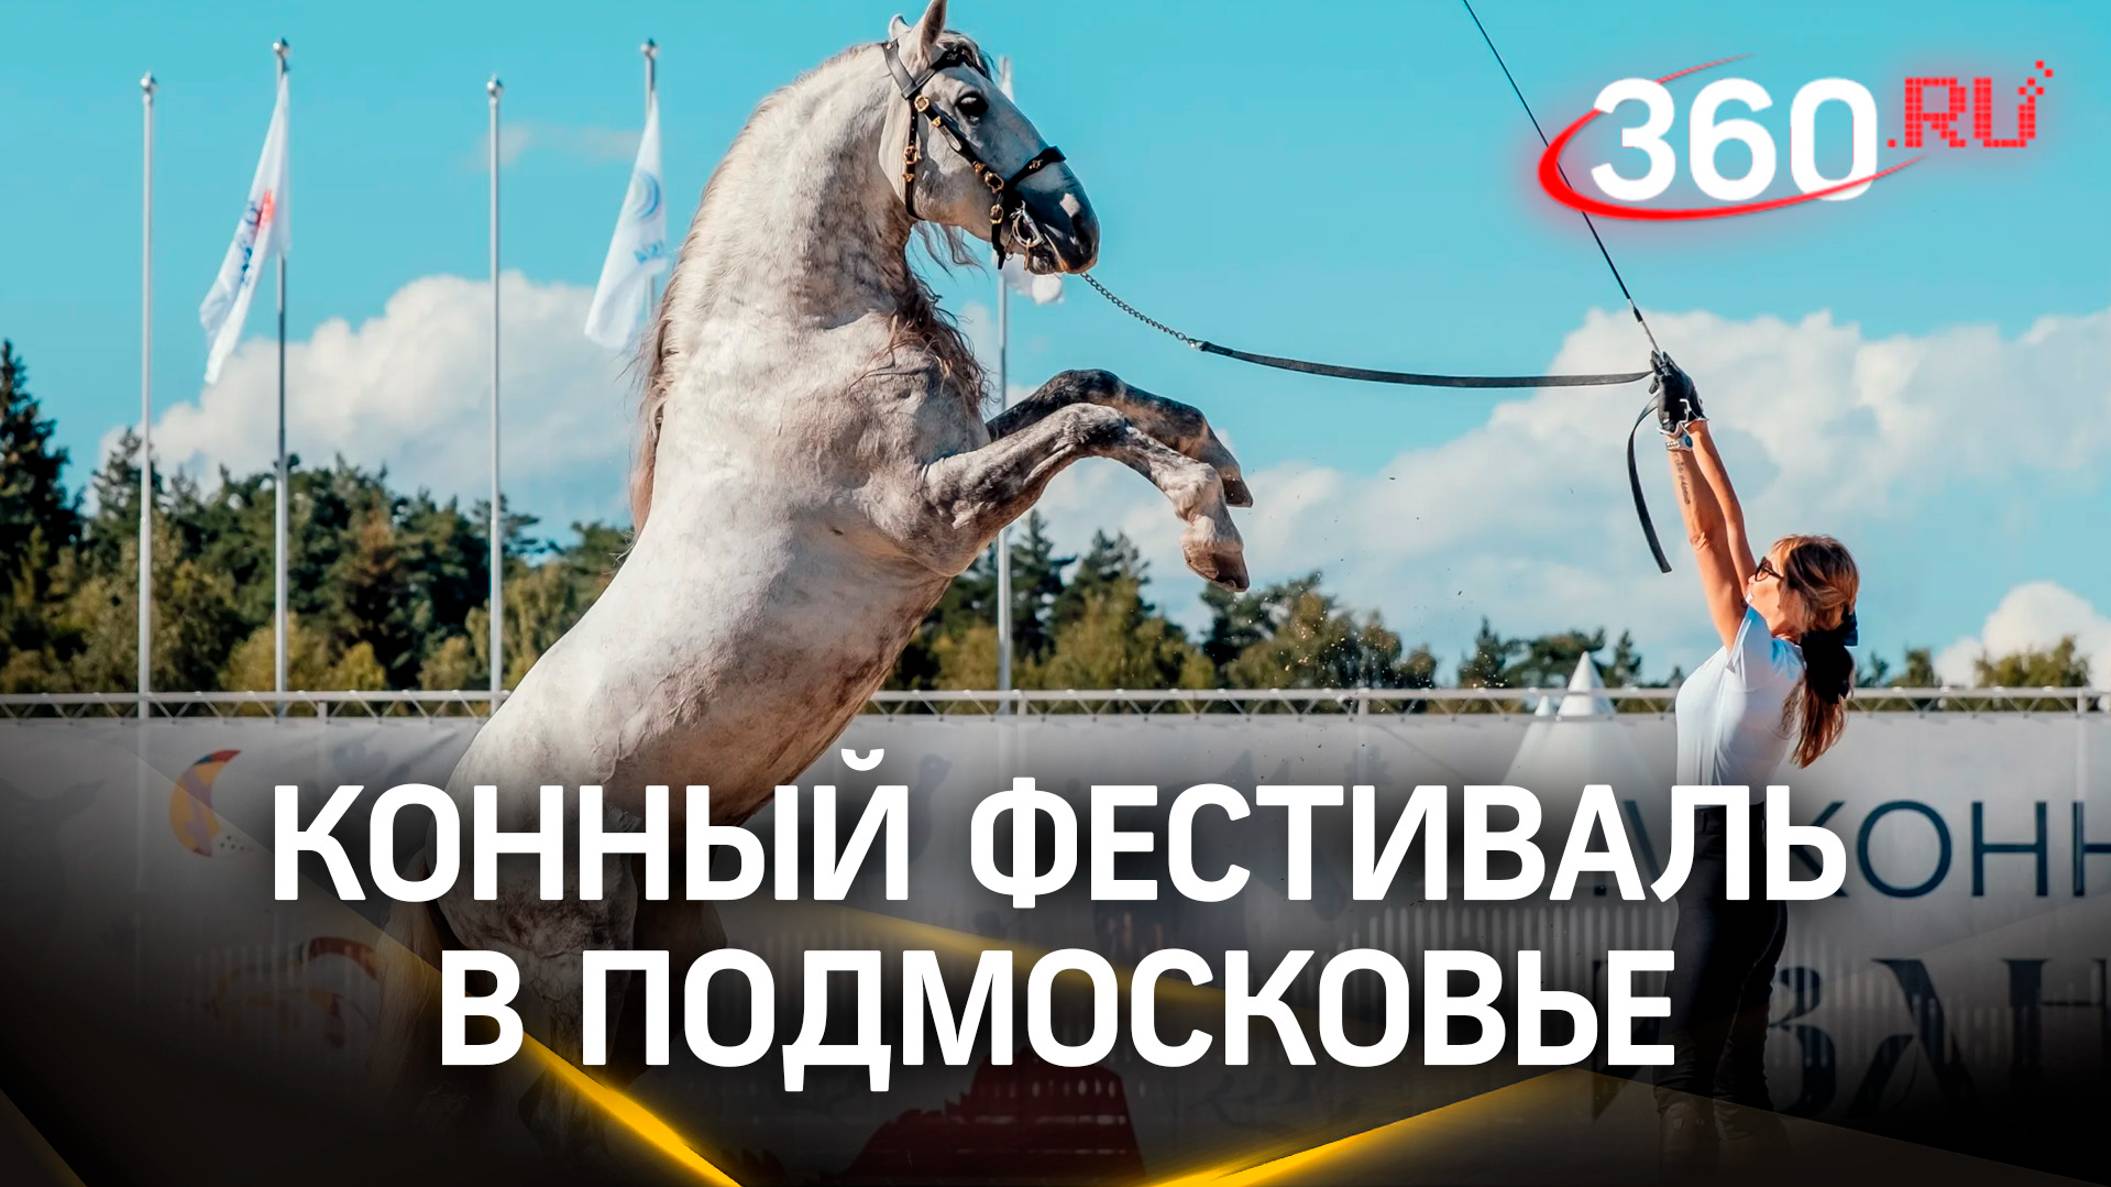 Крупнейший конный фестиваль прошел в Подмосковье